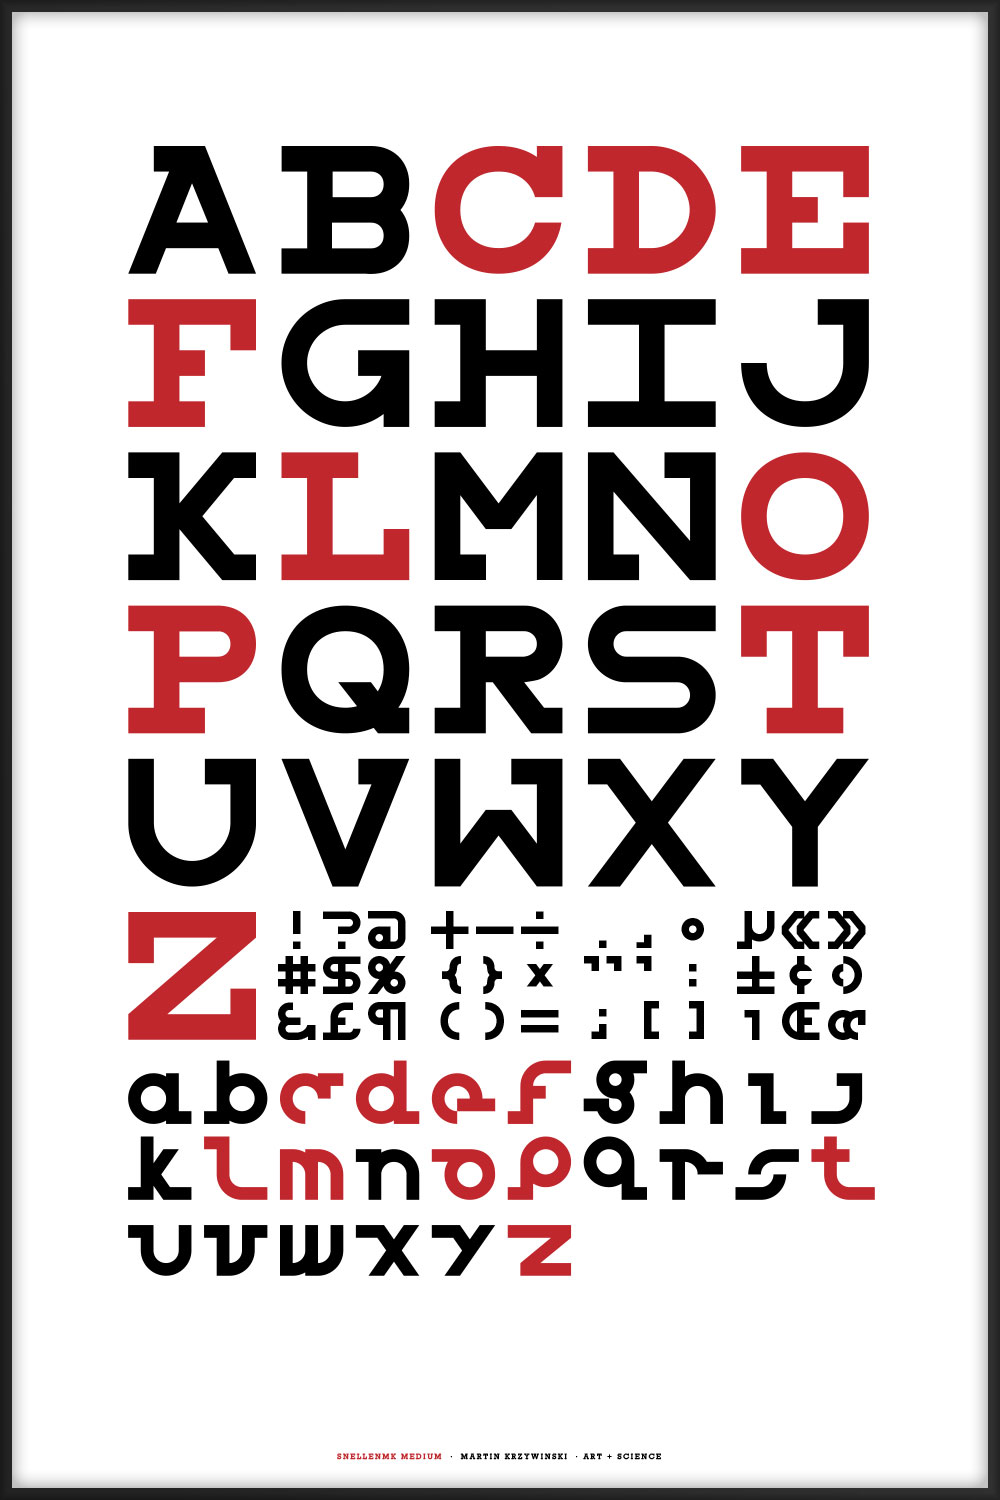 The SnellenMK optoptype font by Martin Krzywinski